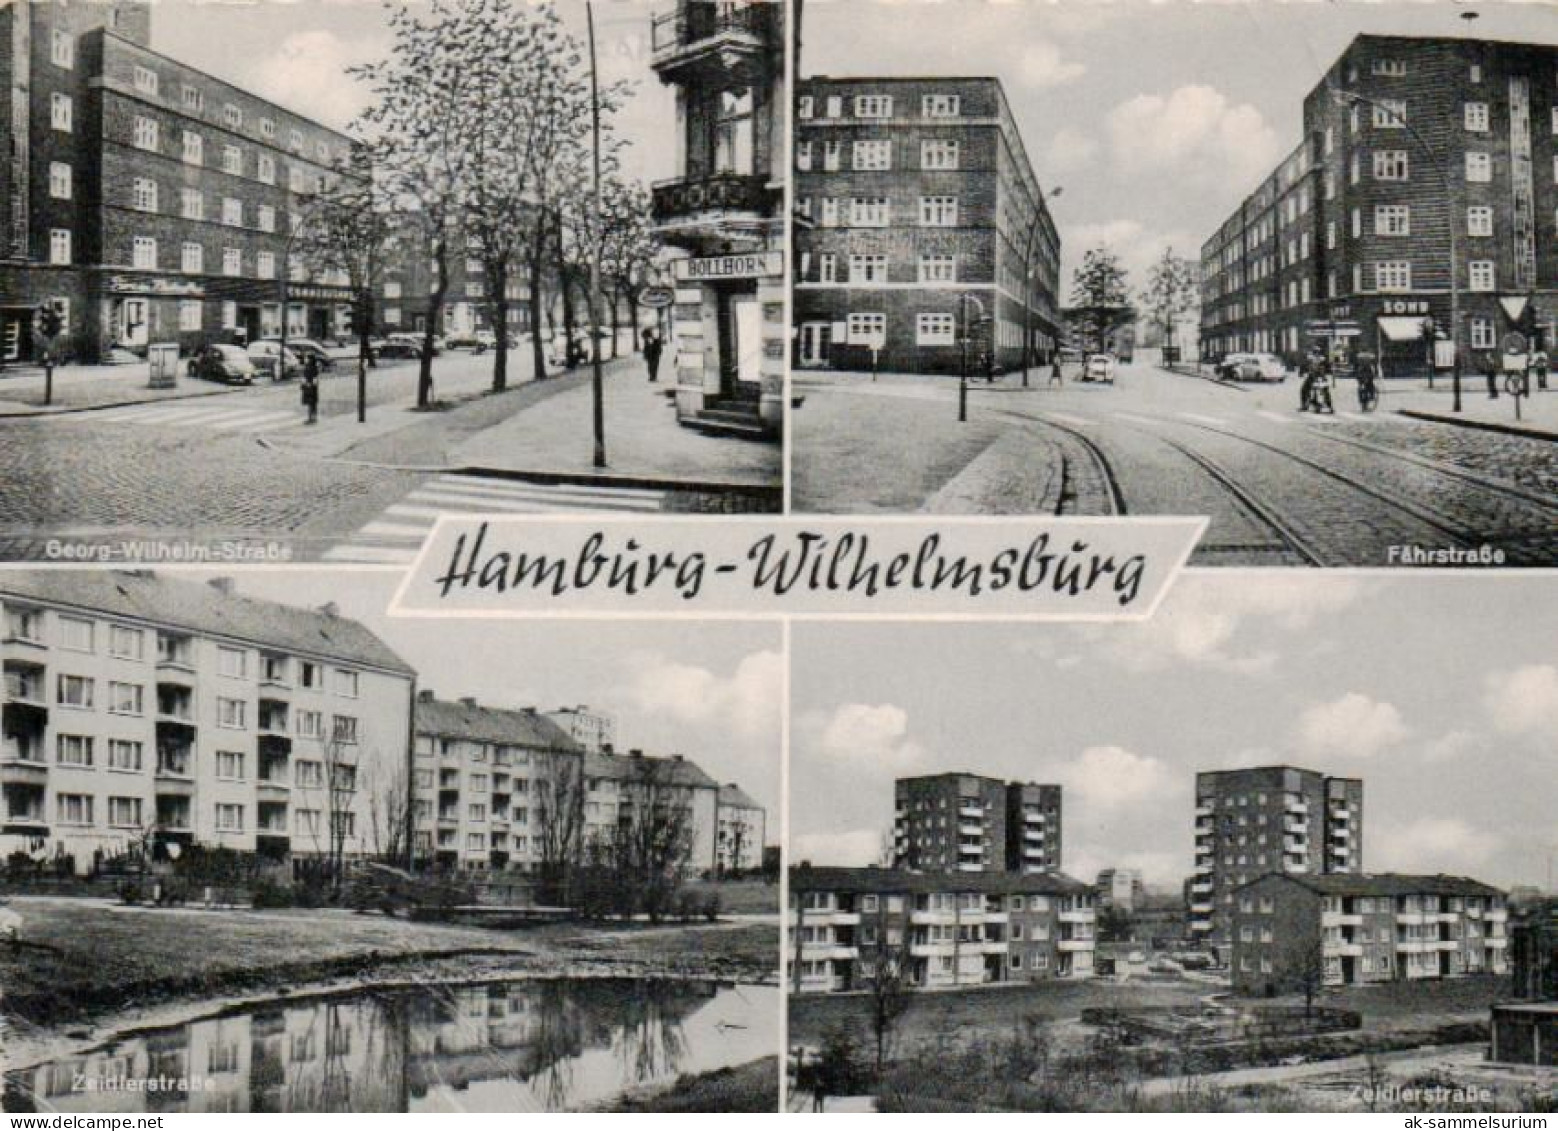 Hamburg / Wilhelmsburg (D-A419) - Wilhemsburg